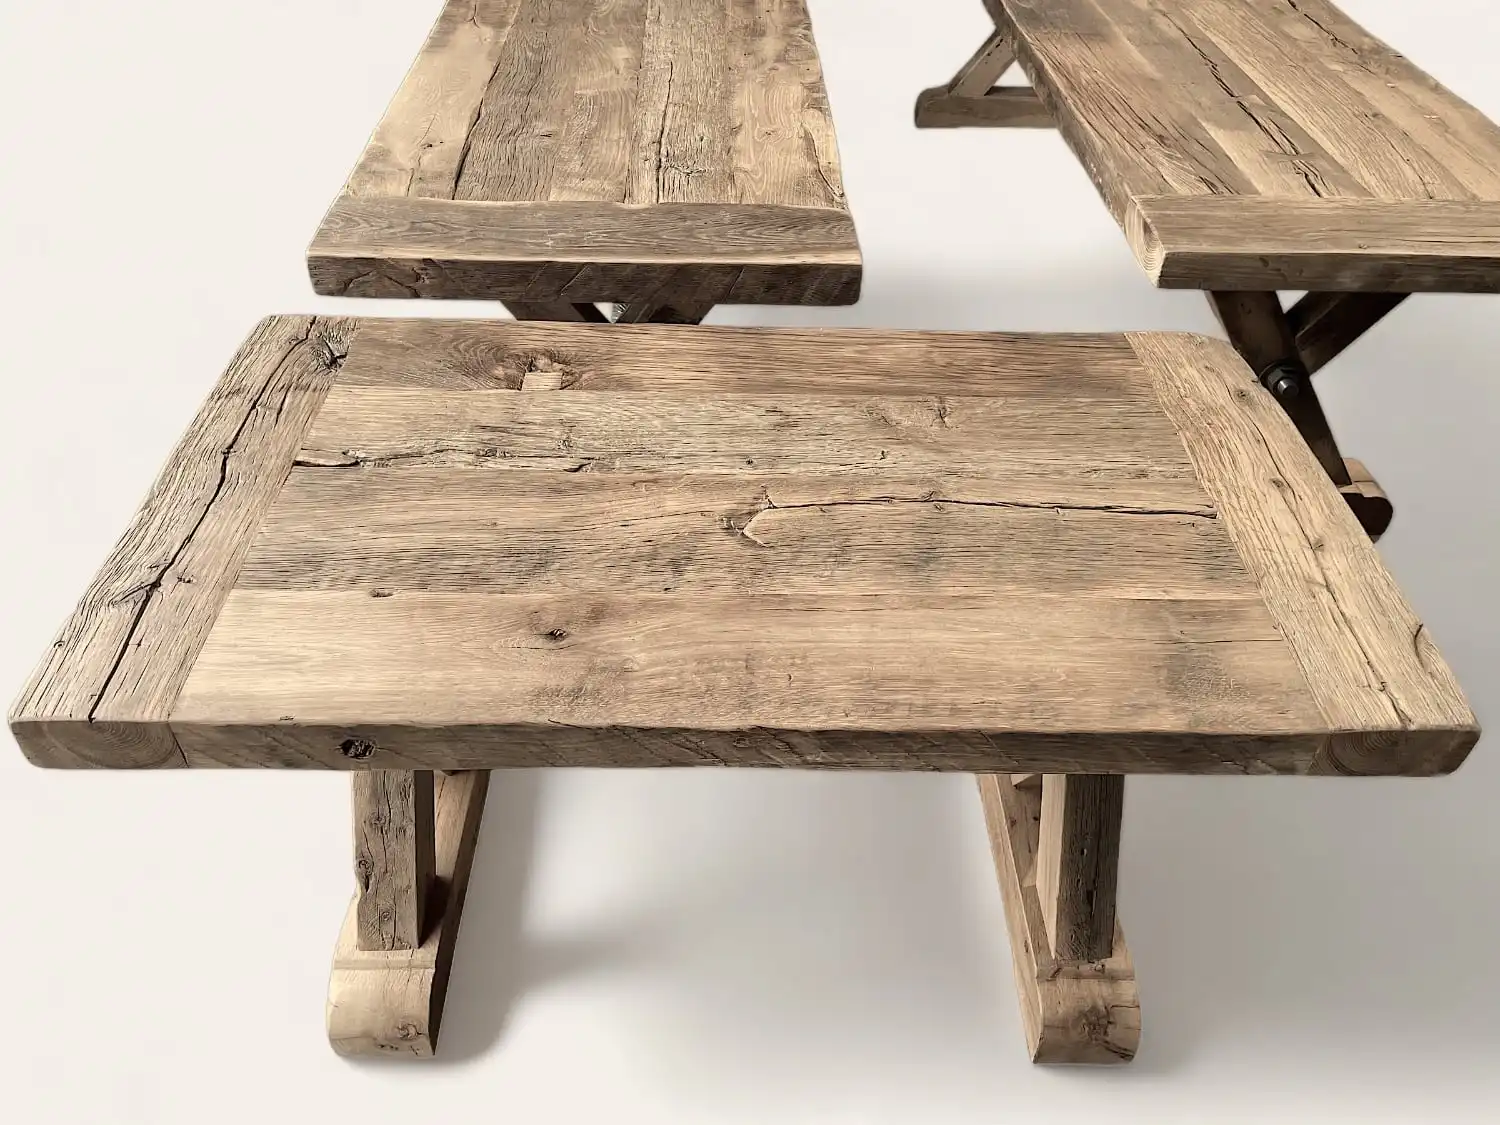 Tables robustes en bois ancien, avec une finition texturée mettant en valeur les noeuds et les fissures naturelles du bois, incarnant l'esprit rustique d'une fermette.